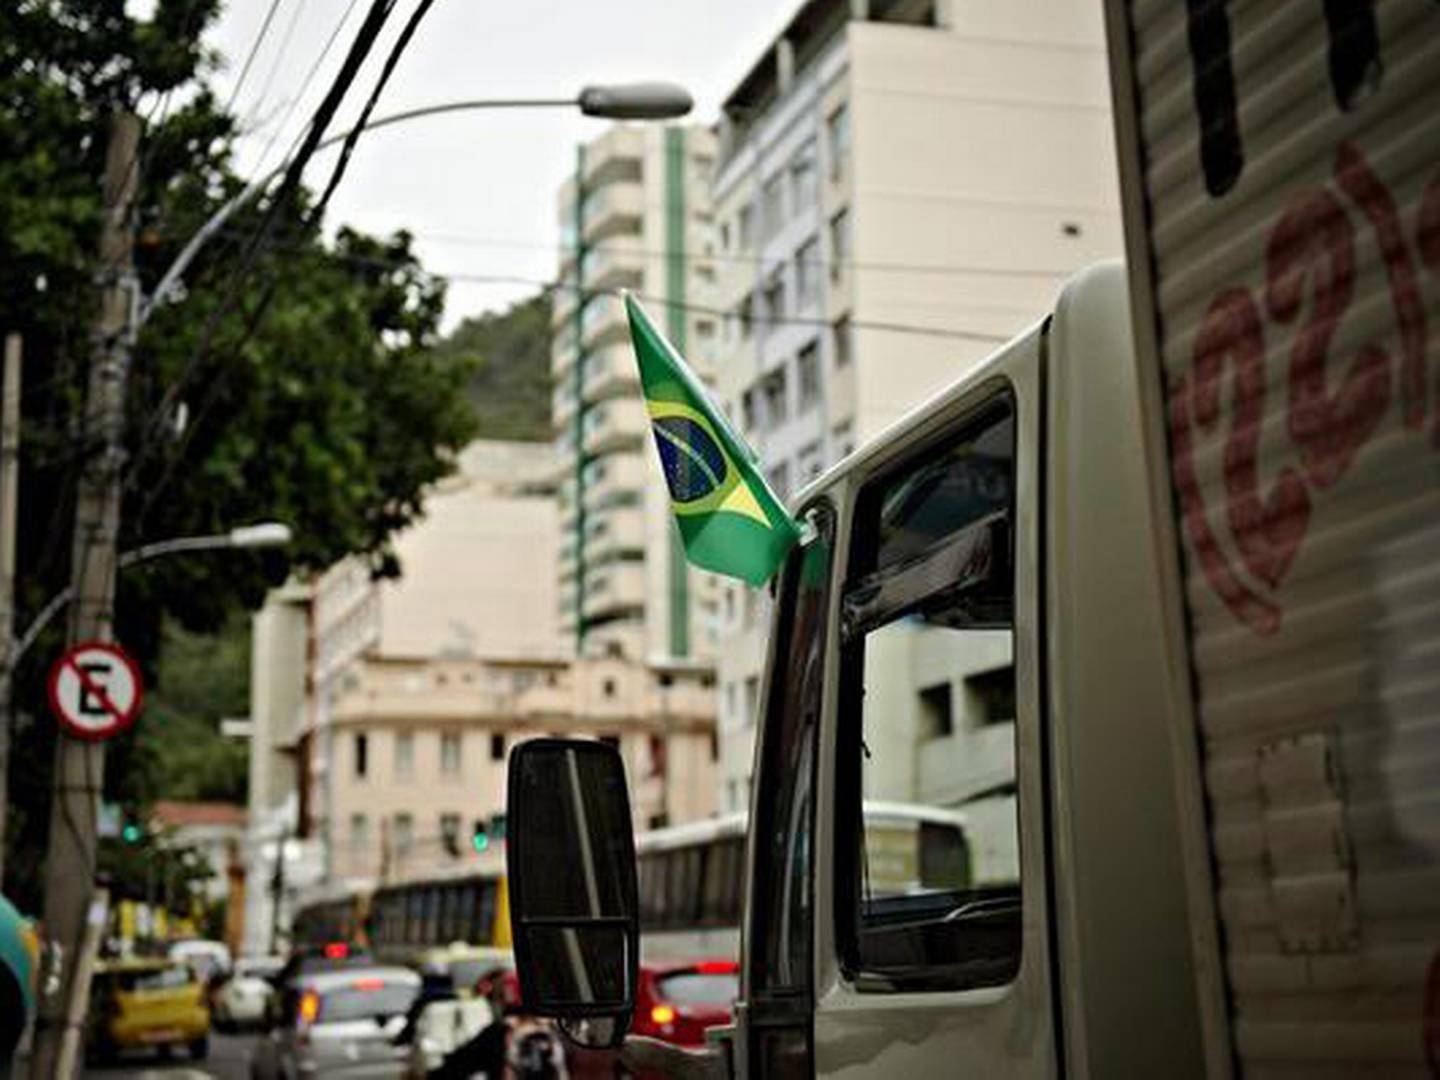 Topsøes katalysator-fabrik i Brasilien skal gøre landets transport grønnere. | Foto: Mikkel Khan Tariq, Polfoto